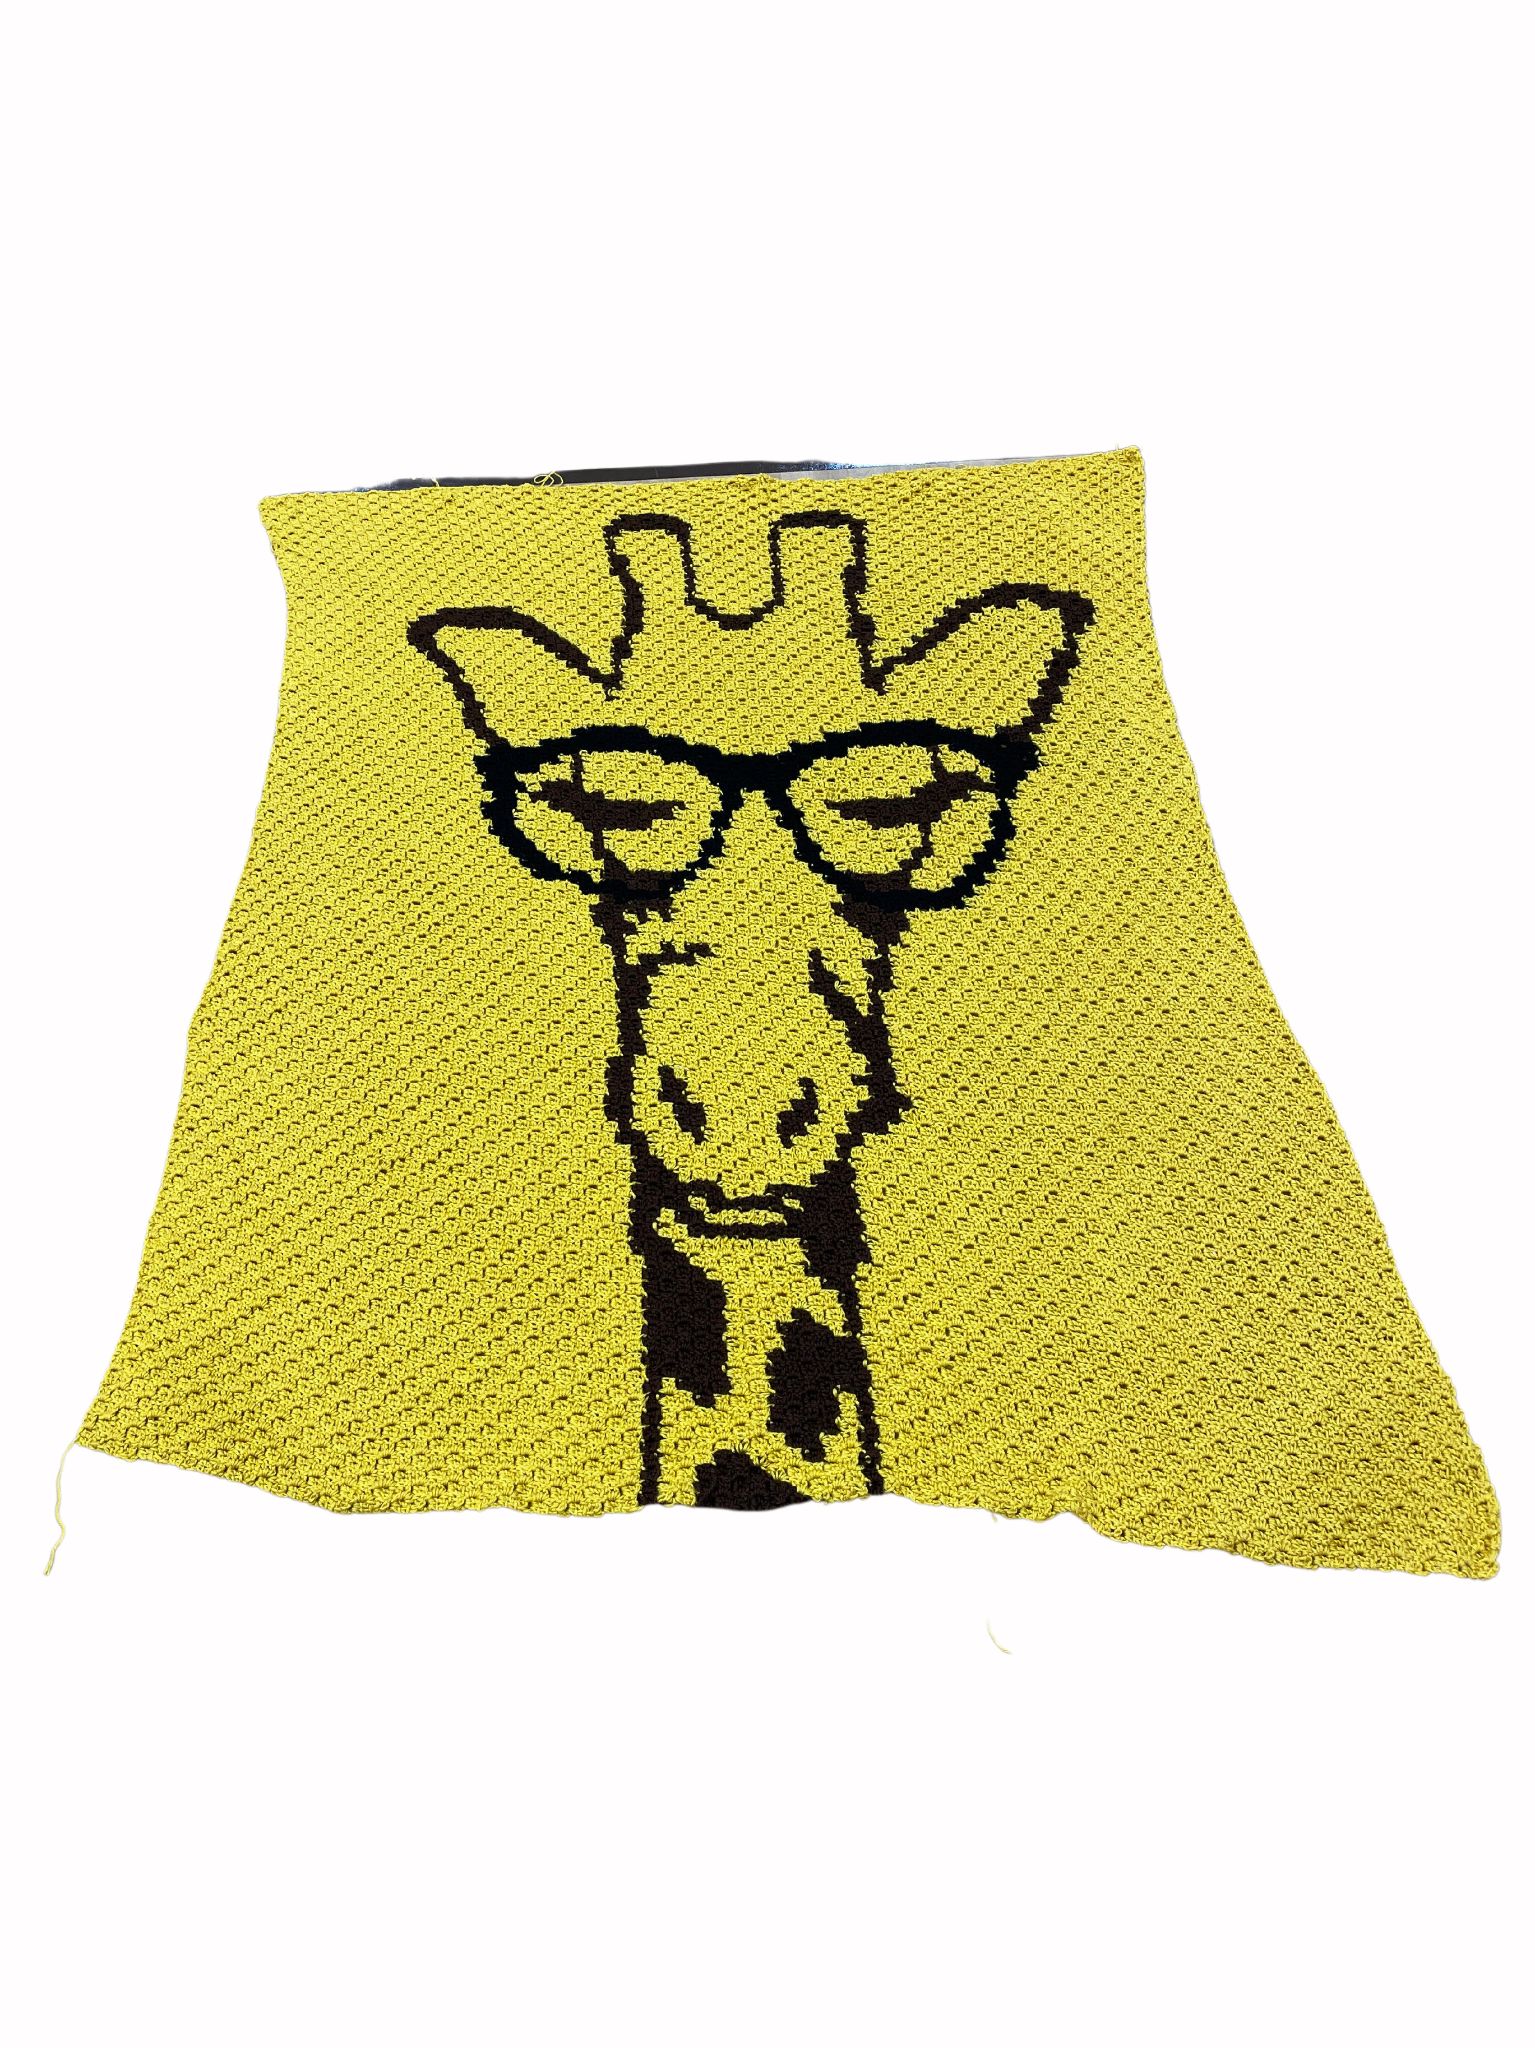  Giraffe blanket 